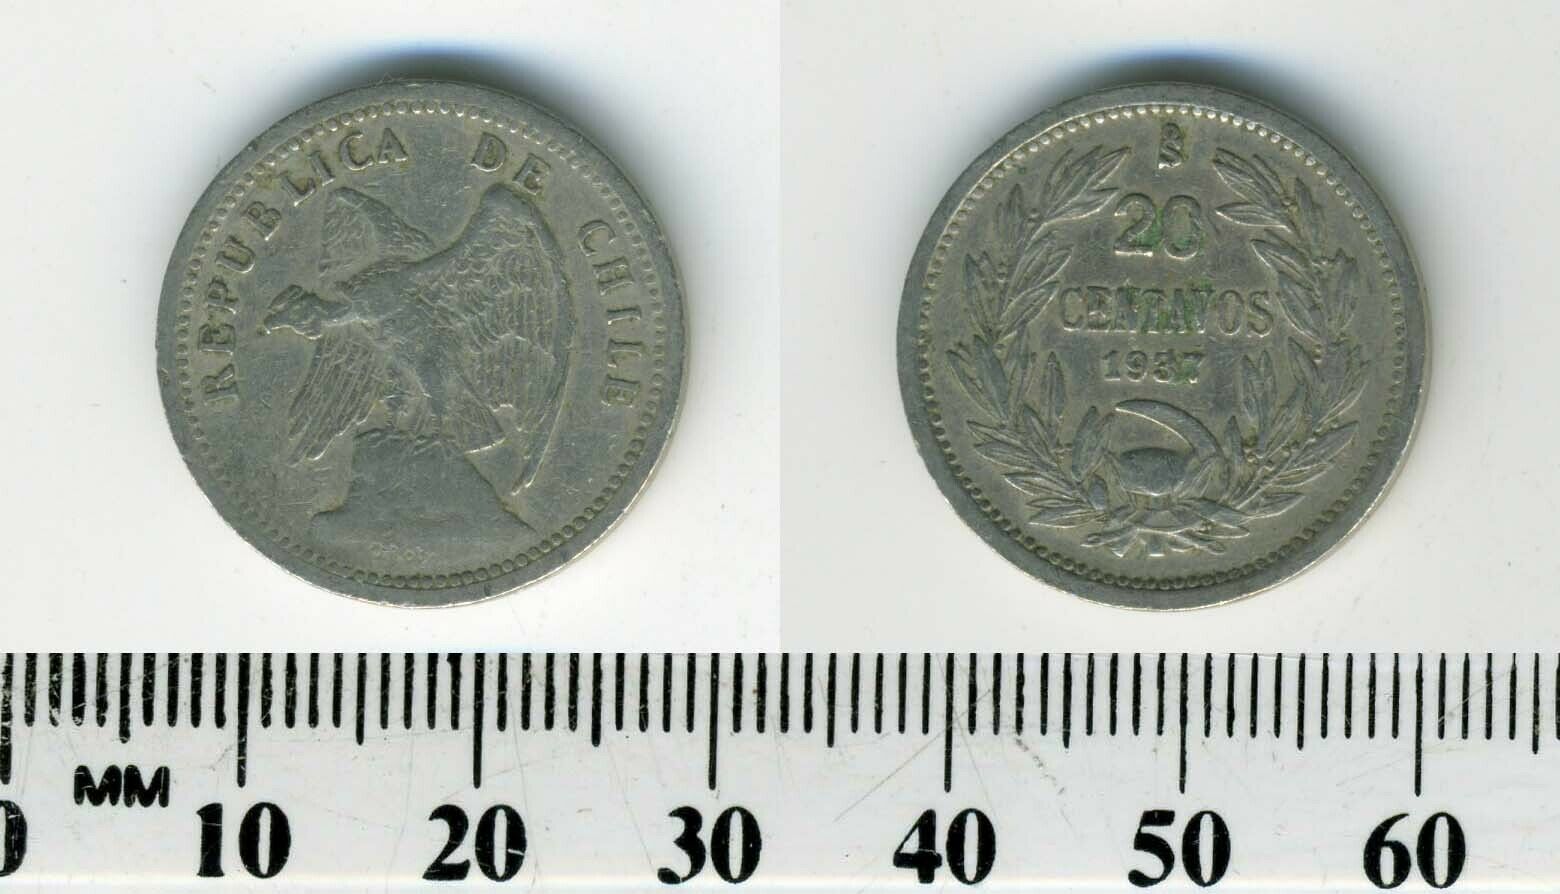 Chile 1937 - 20 Centavos Copper-Nickel Coin - Defiant Condor on rock